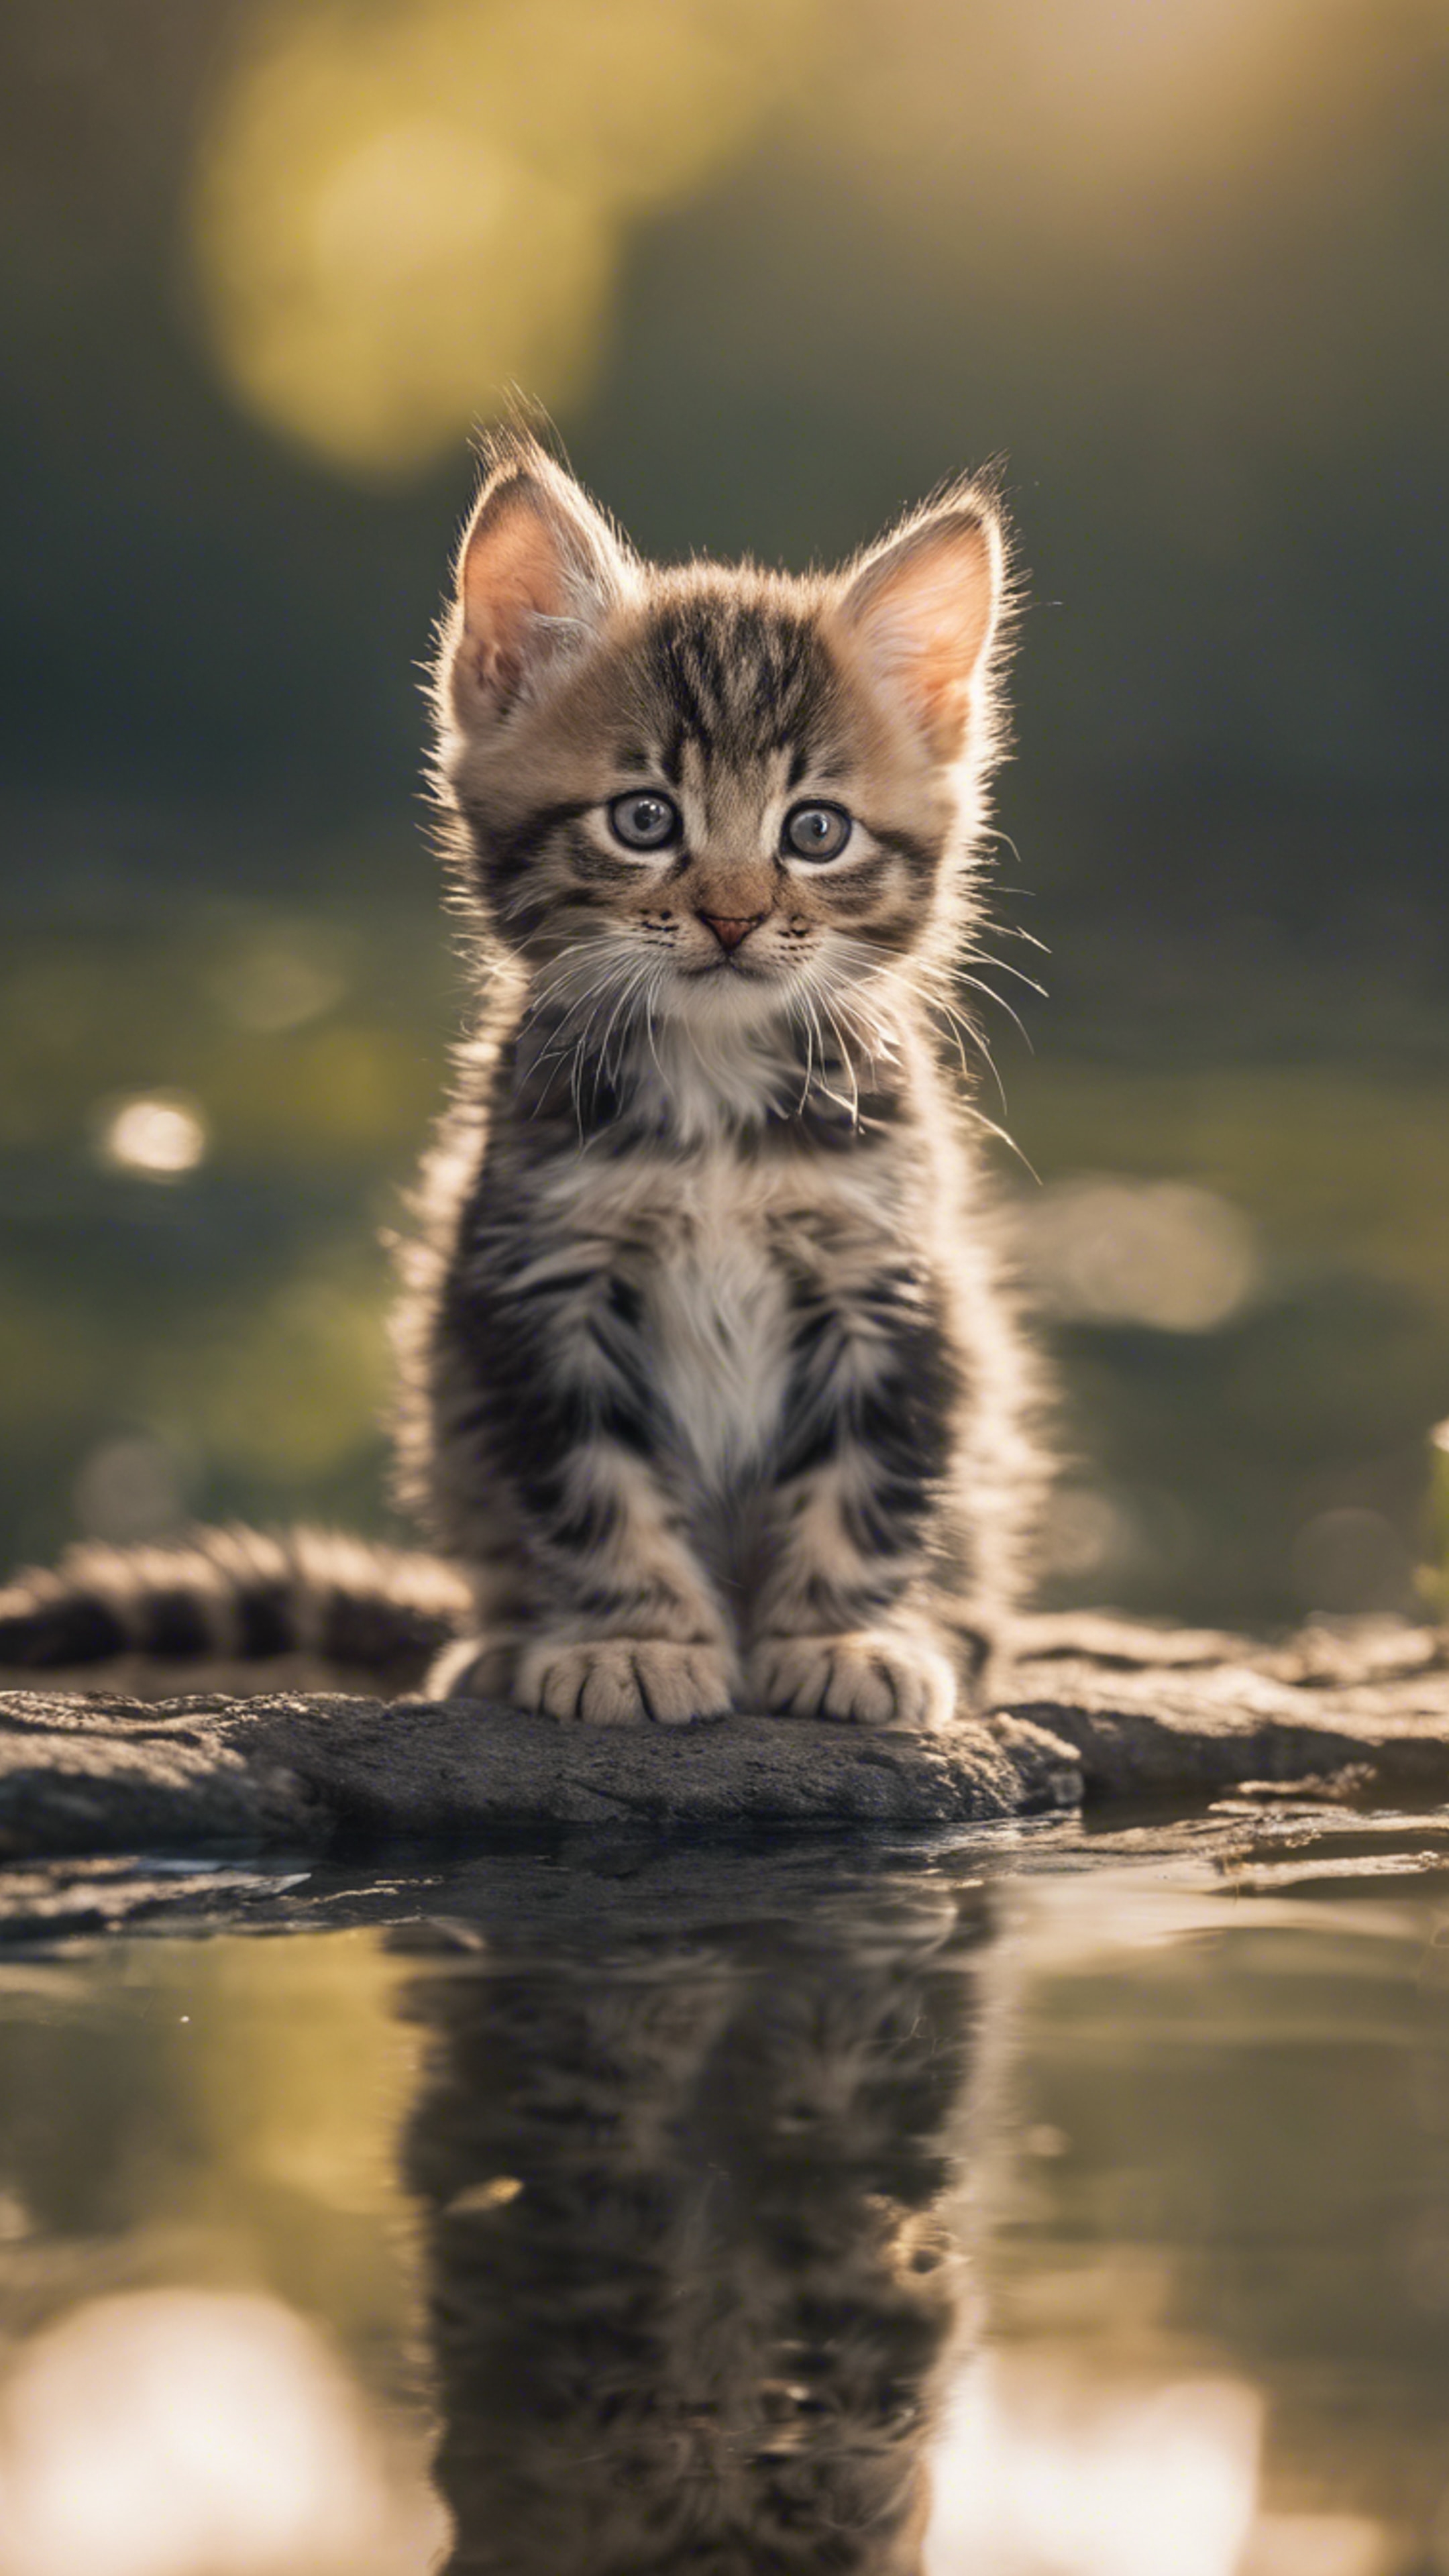 An American Bobtail kitten gazing at its reflection in a clear still pond. Wallpaper[44cb4f7b57f44b00b454]